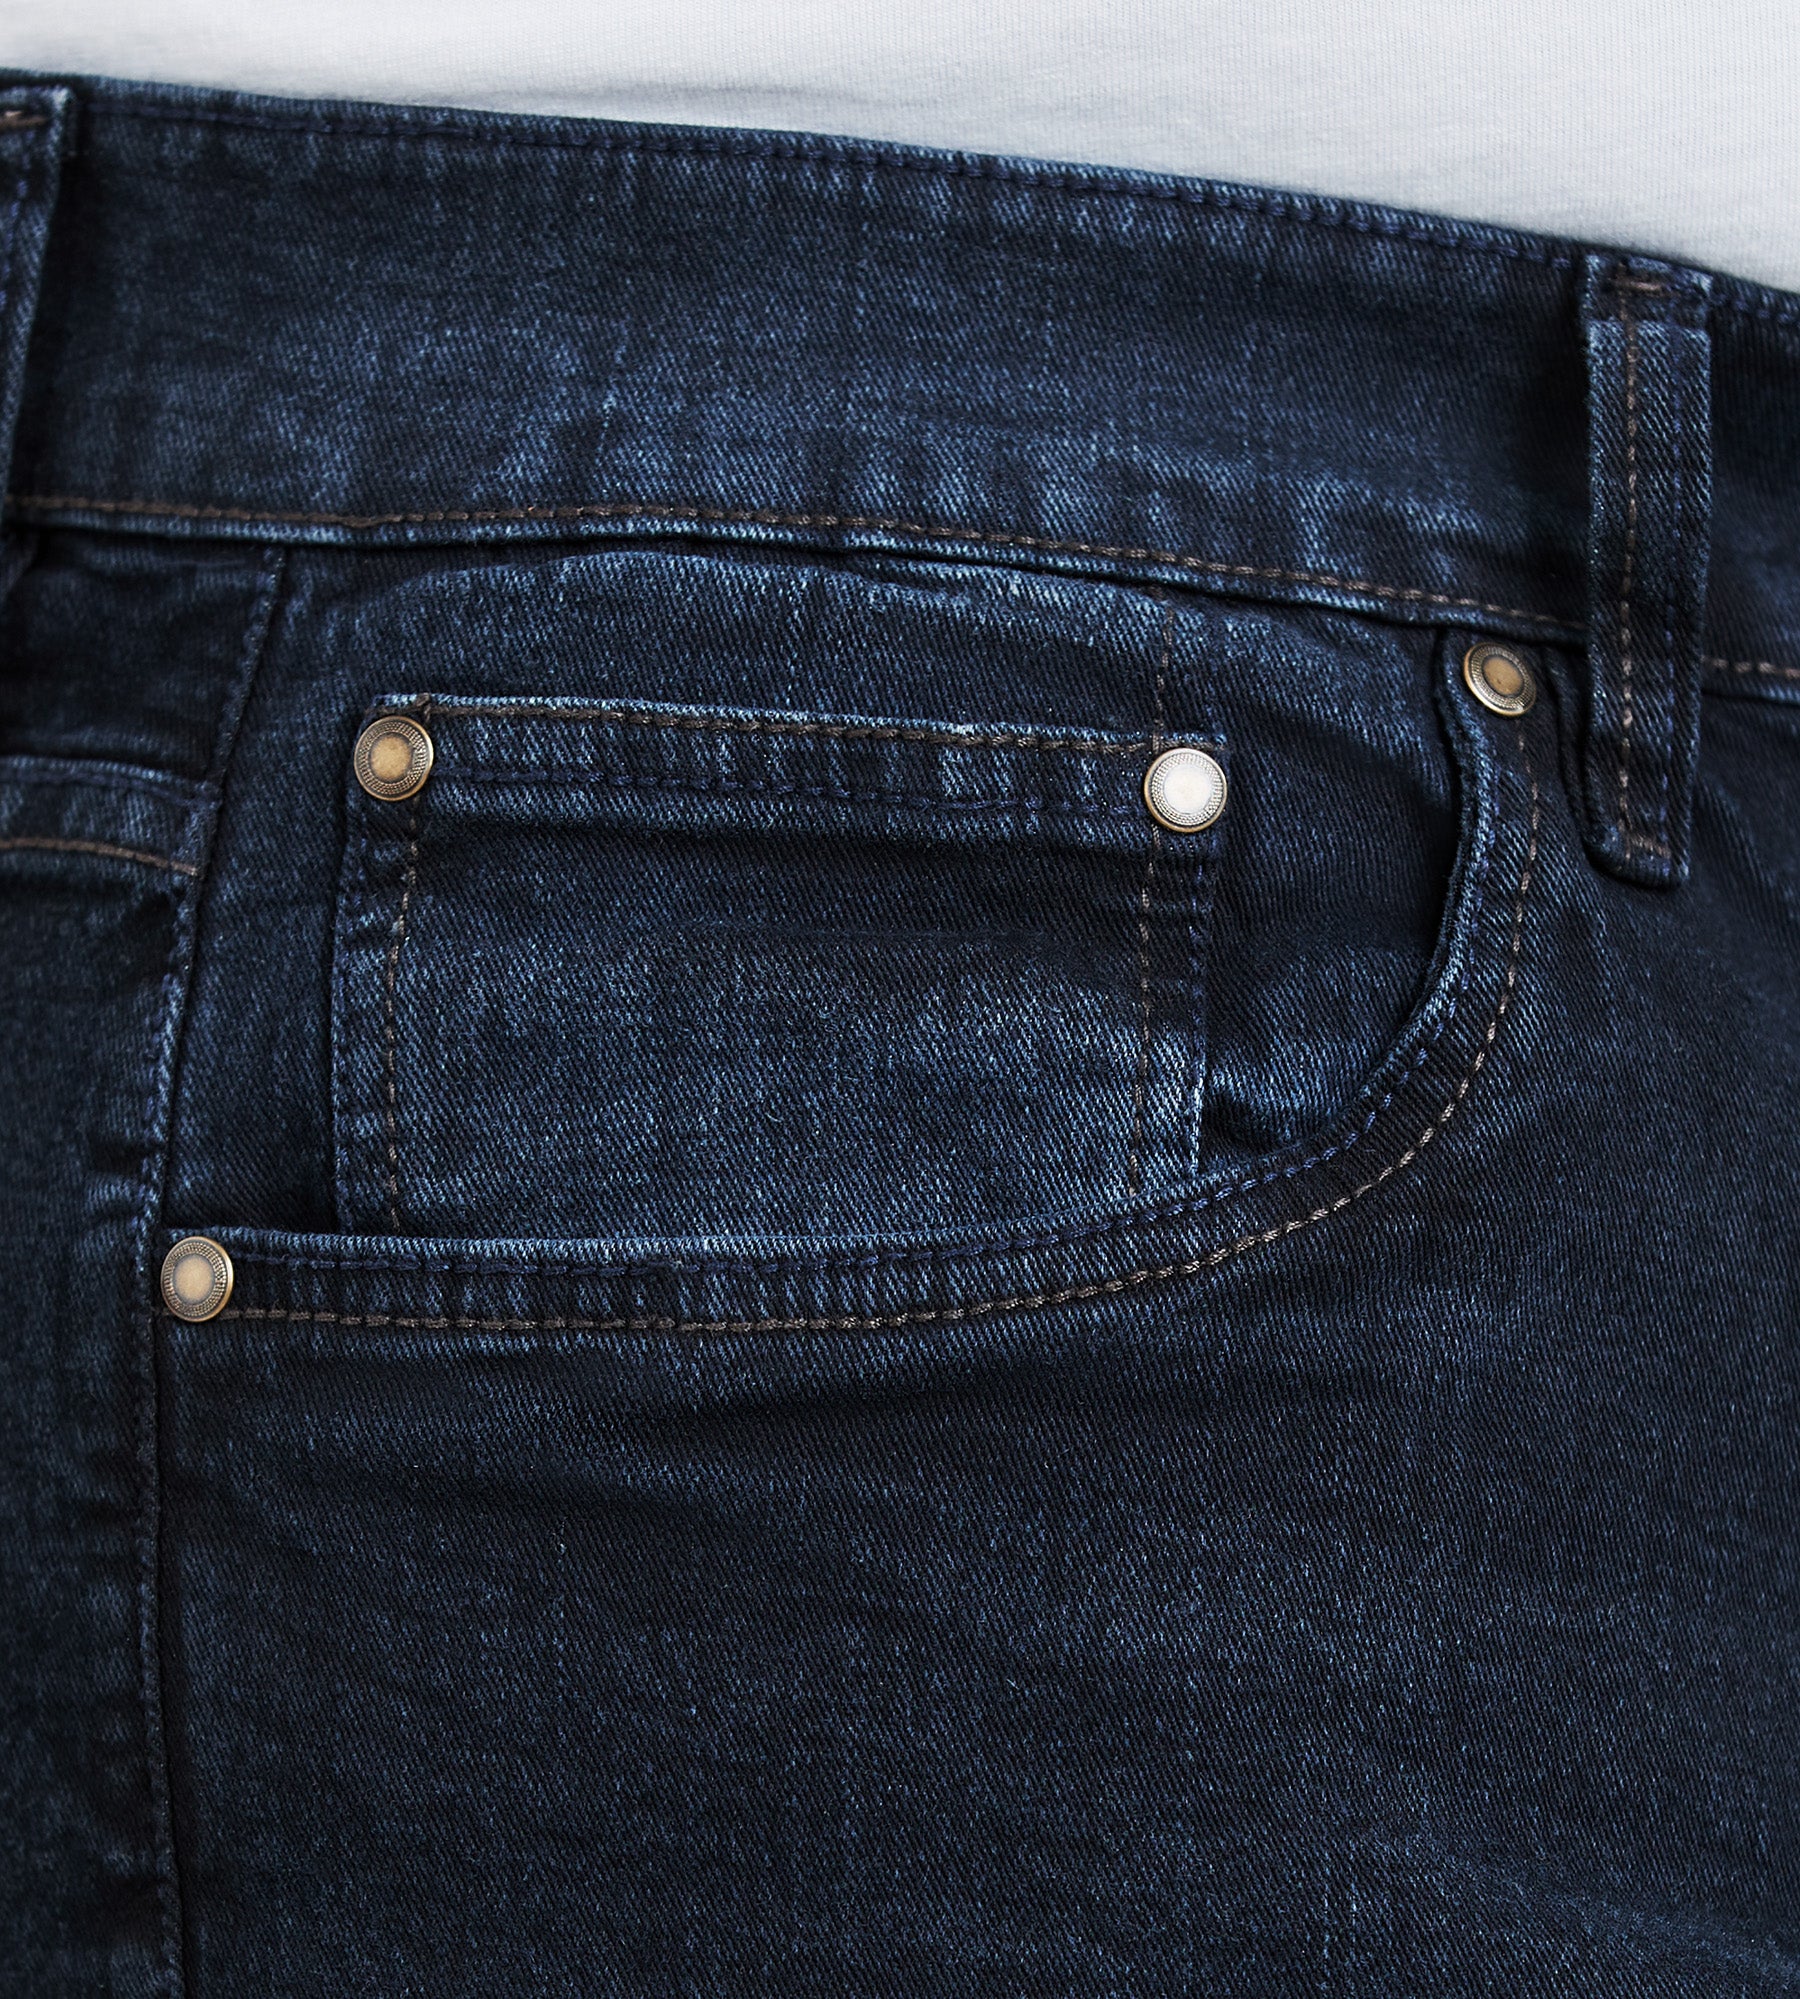 Ultimate Five-Pocket Pants – George Richards